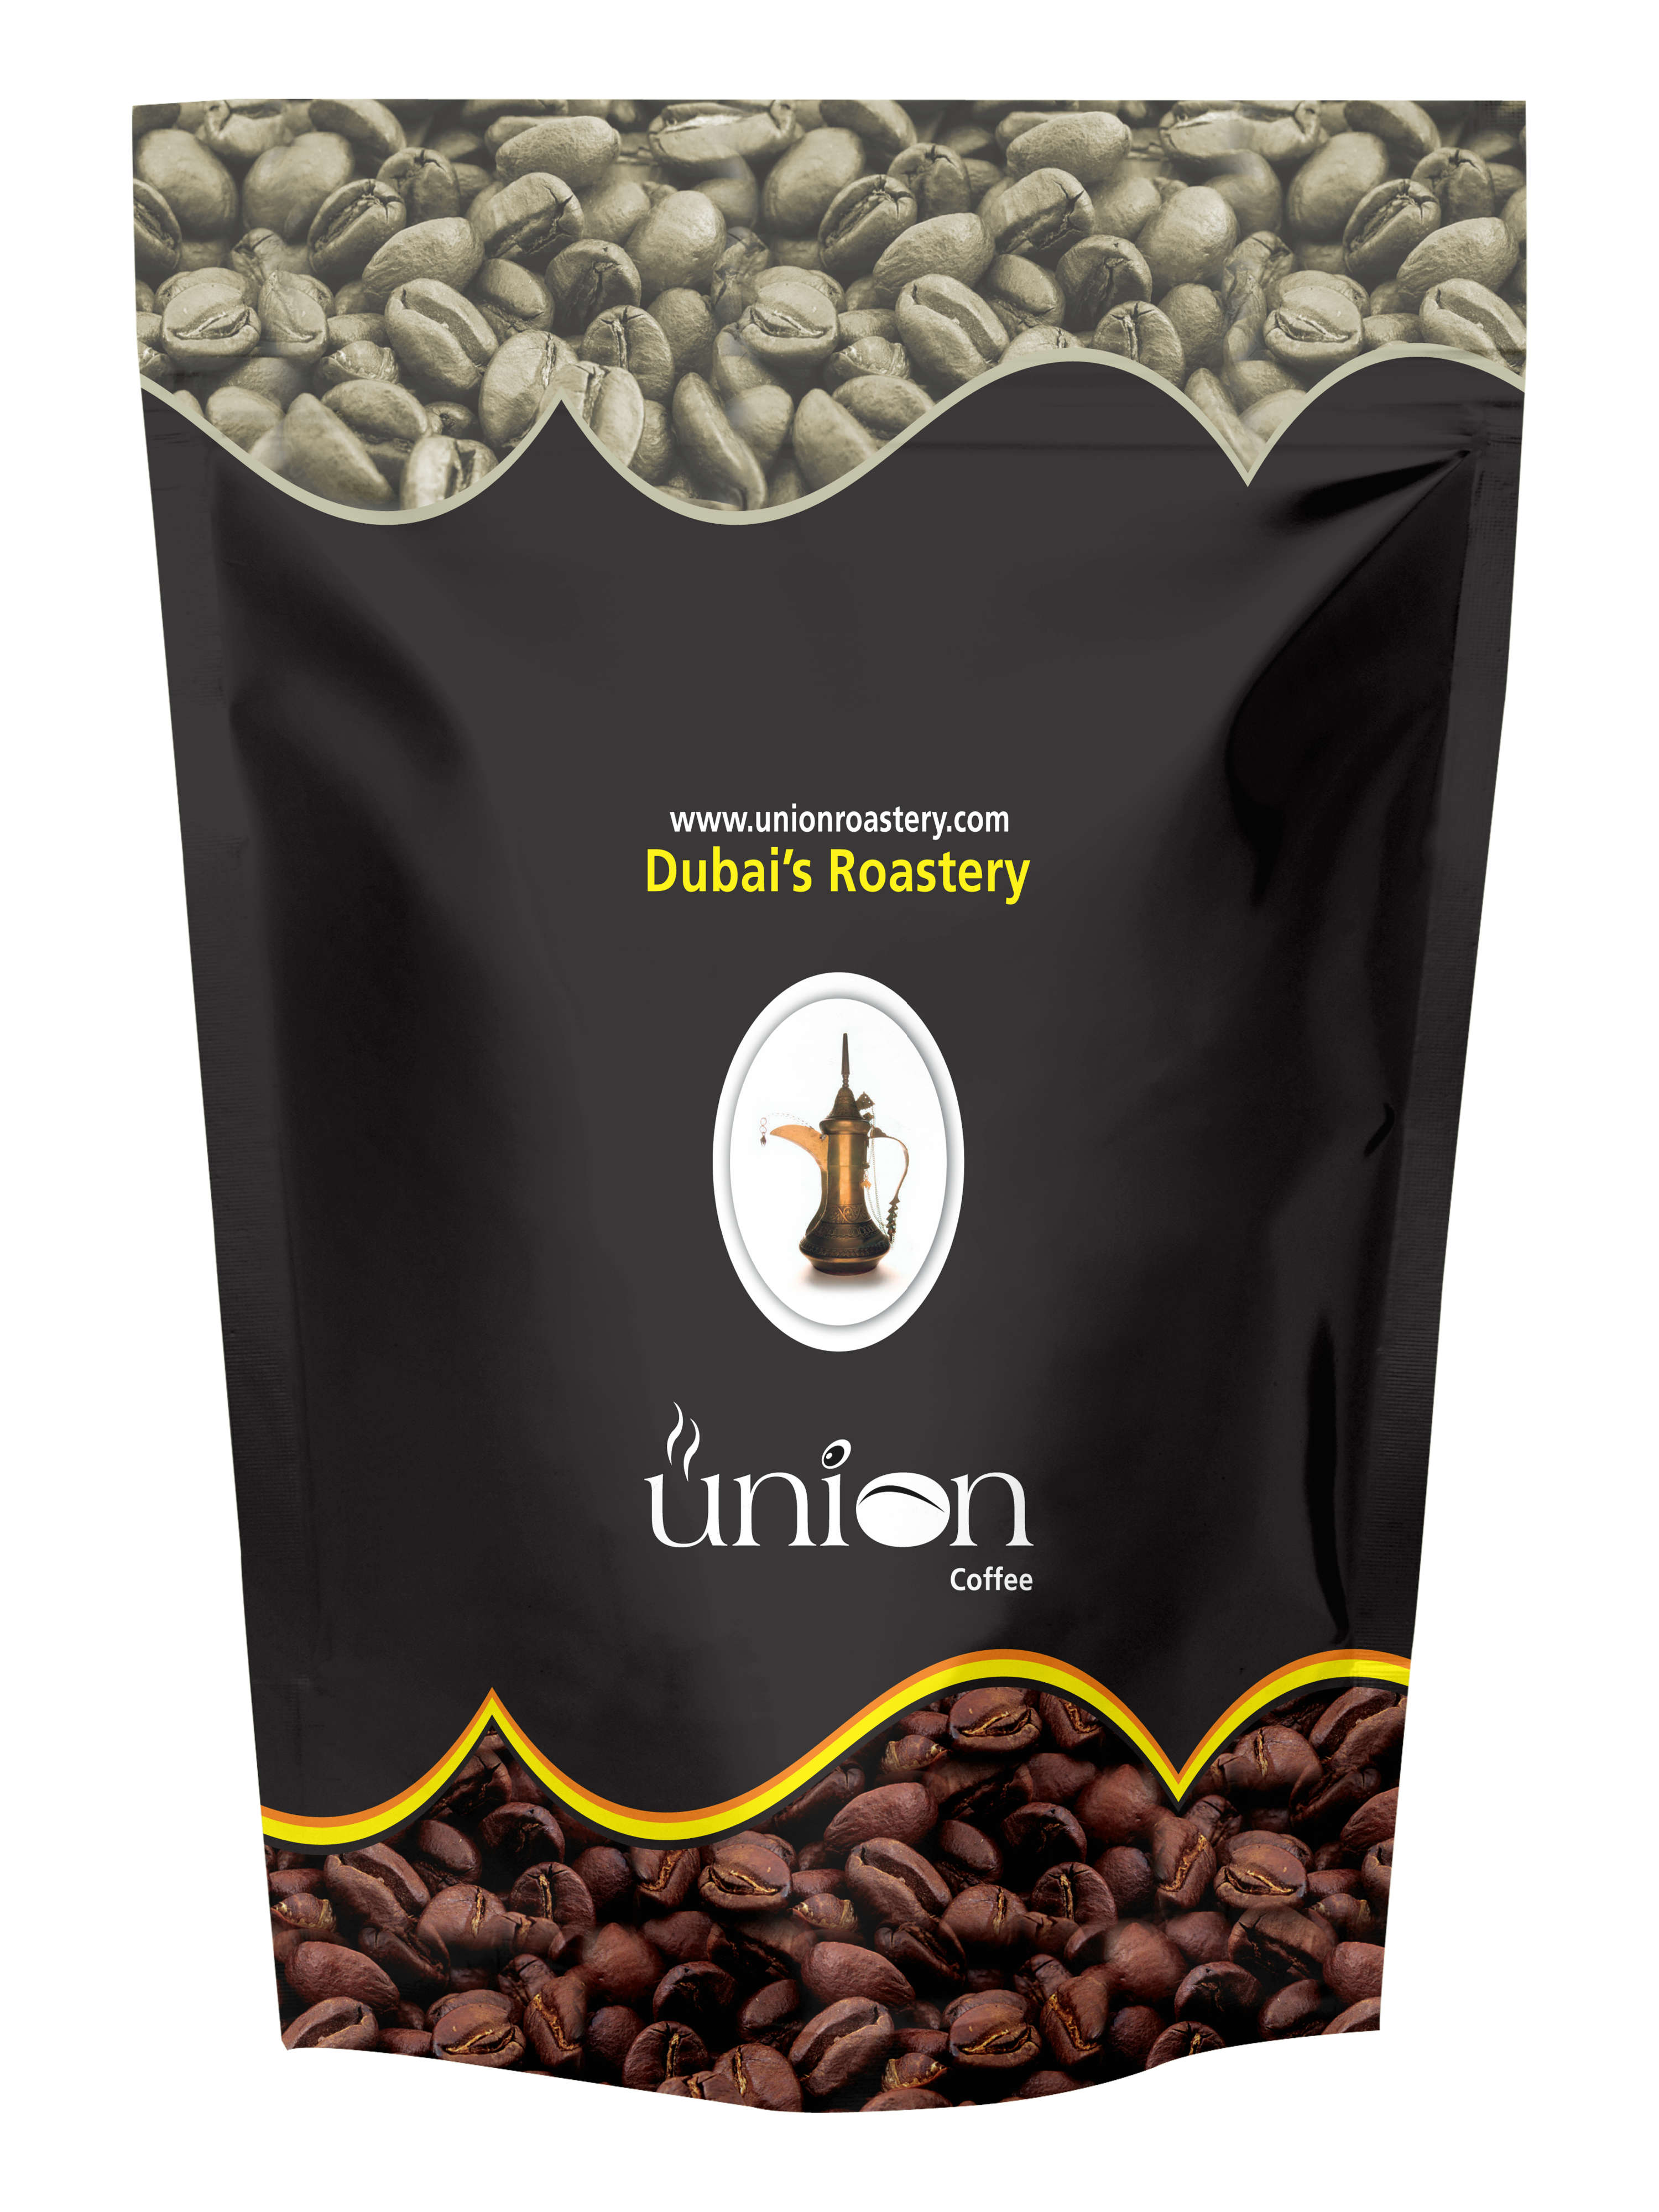 Coffee Bean Bags